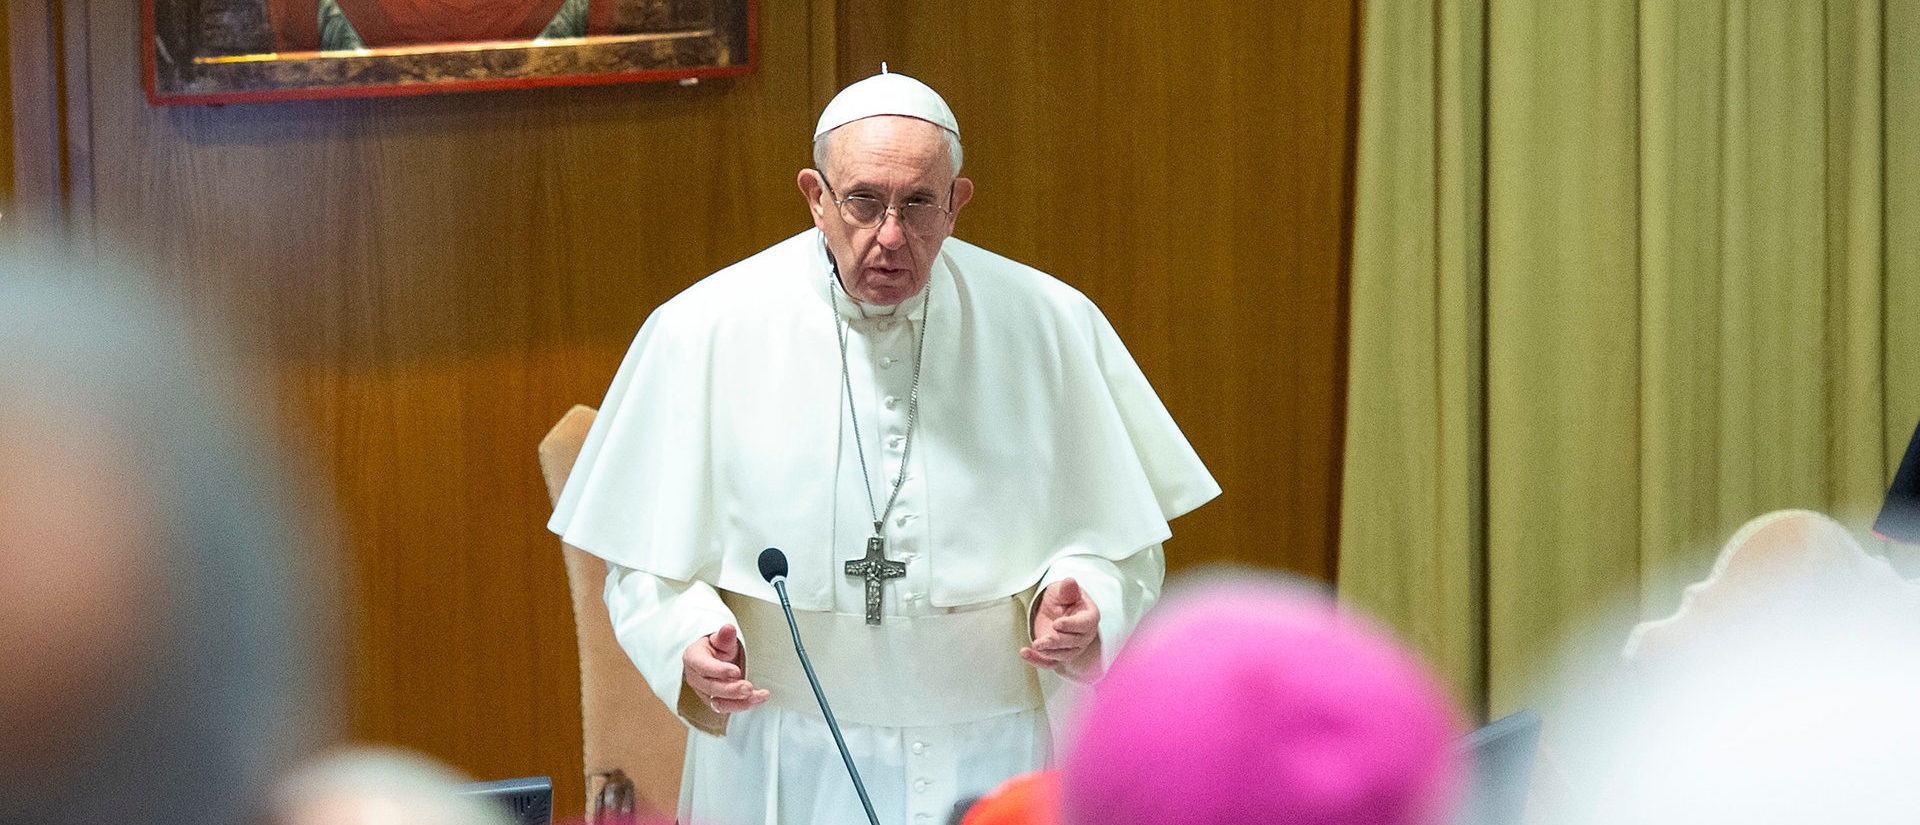 Le pape François a appelé les séminaristes calabrais à développer une "culture de la légalité" | photo d'illustration © Antoine Mekary/IMEDIA